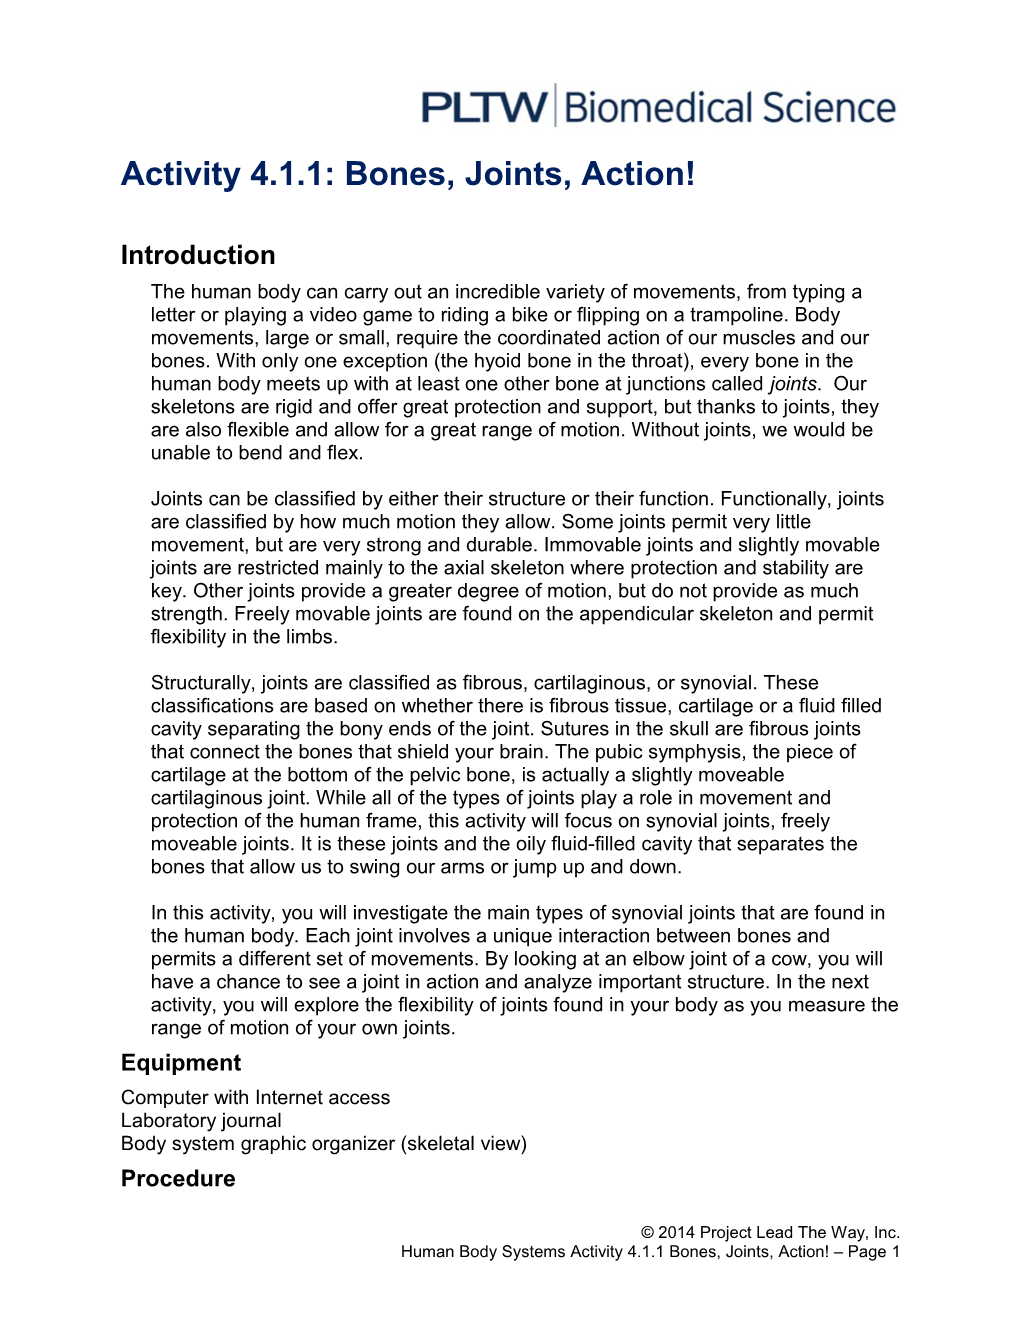 Activity 4.1.1: Bones, Joints, Action!